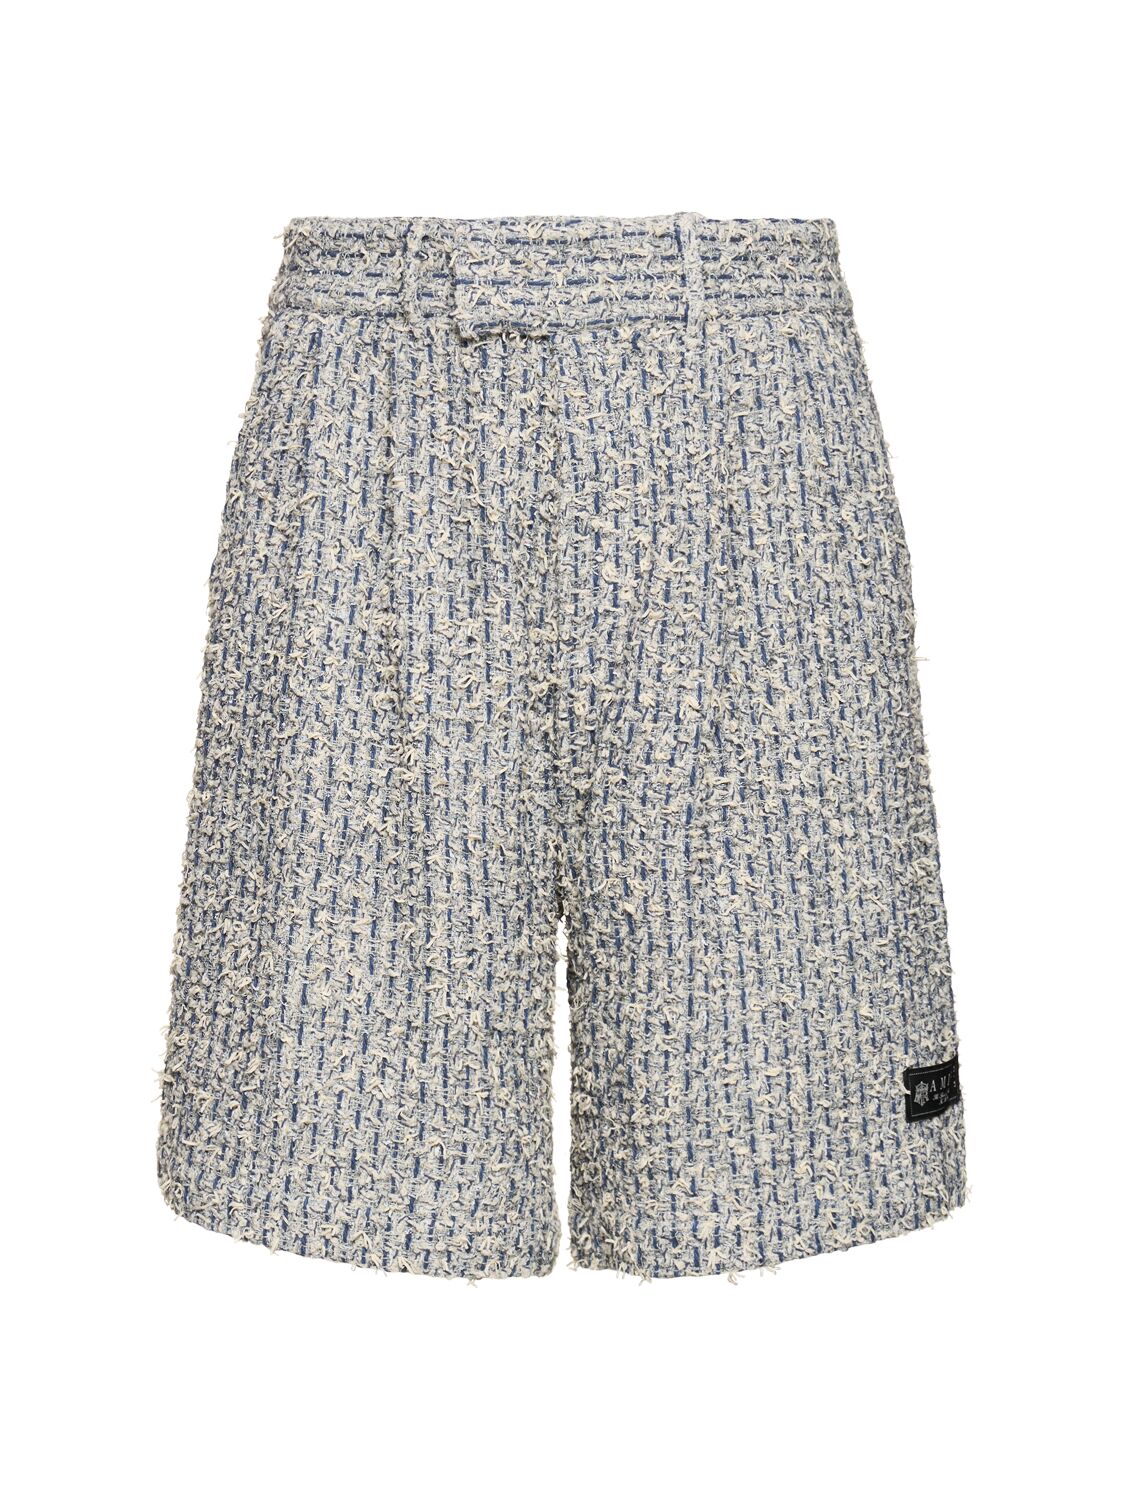 Image of Cotton Blend Bouclé Tweed Shorts